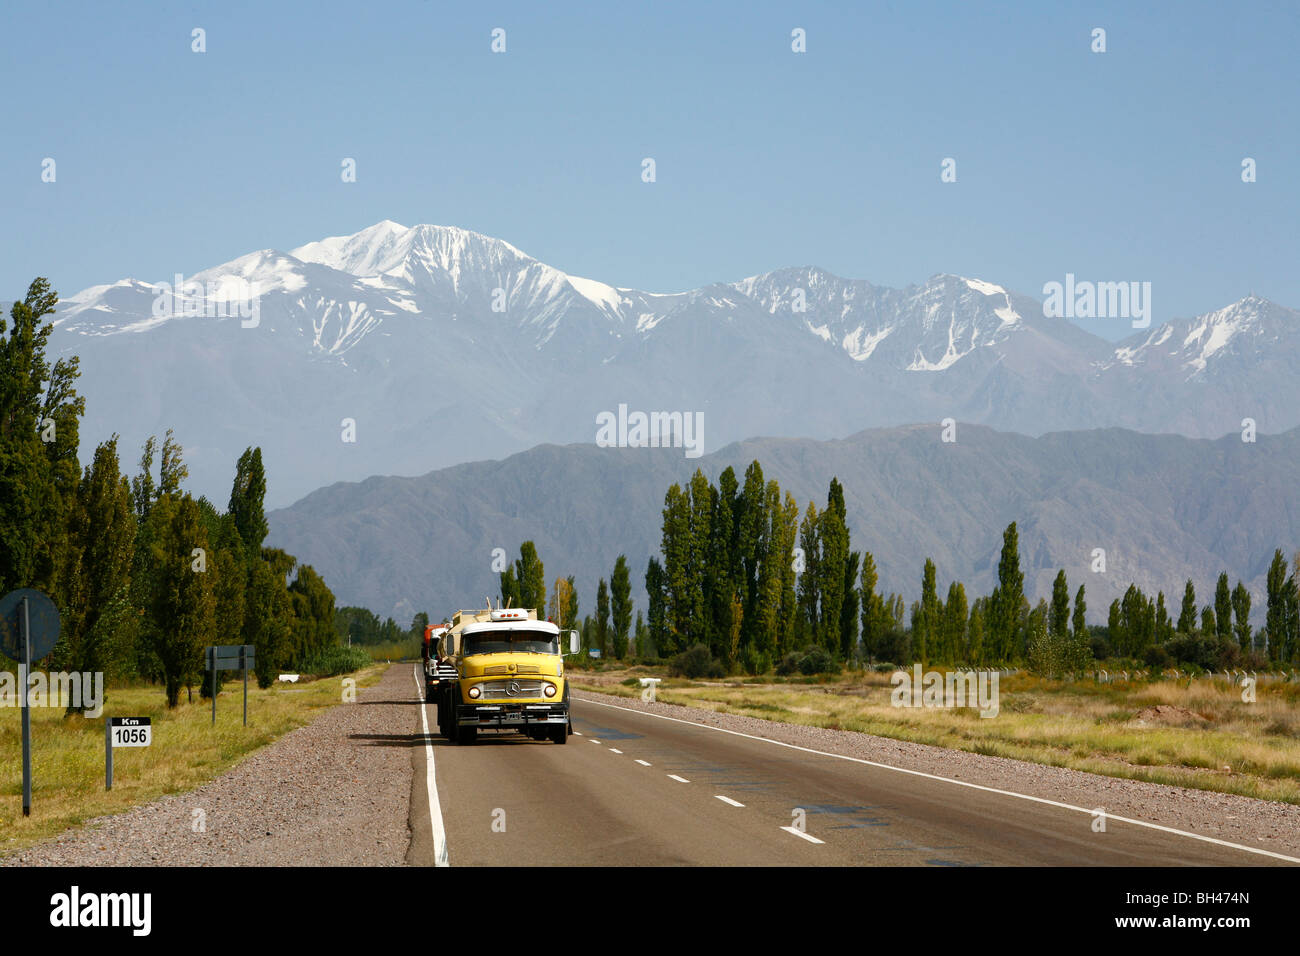 La carretilla en una carretera con las montañas de los Andes en el fondo, Mendoza, Argentina. Foto de stock